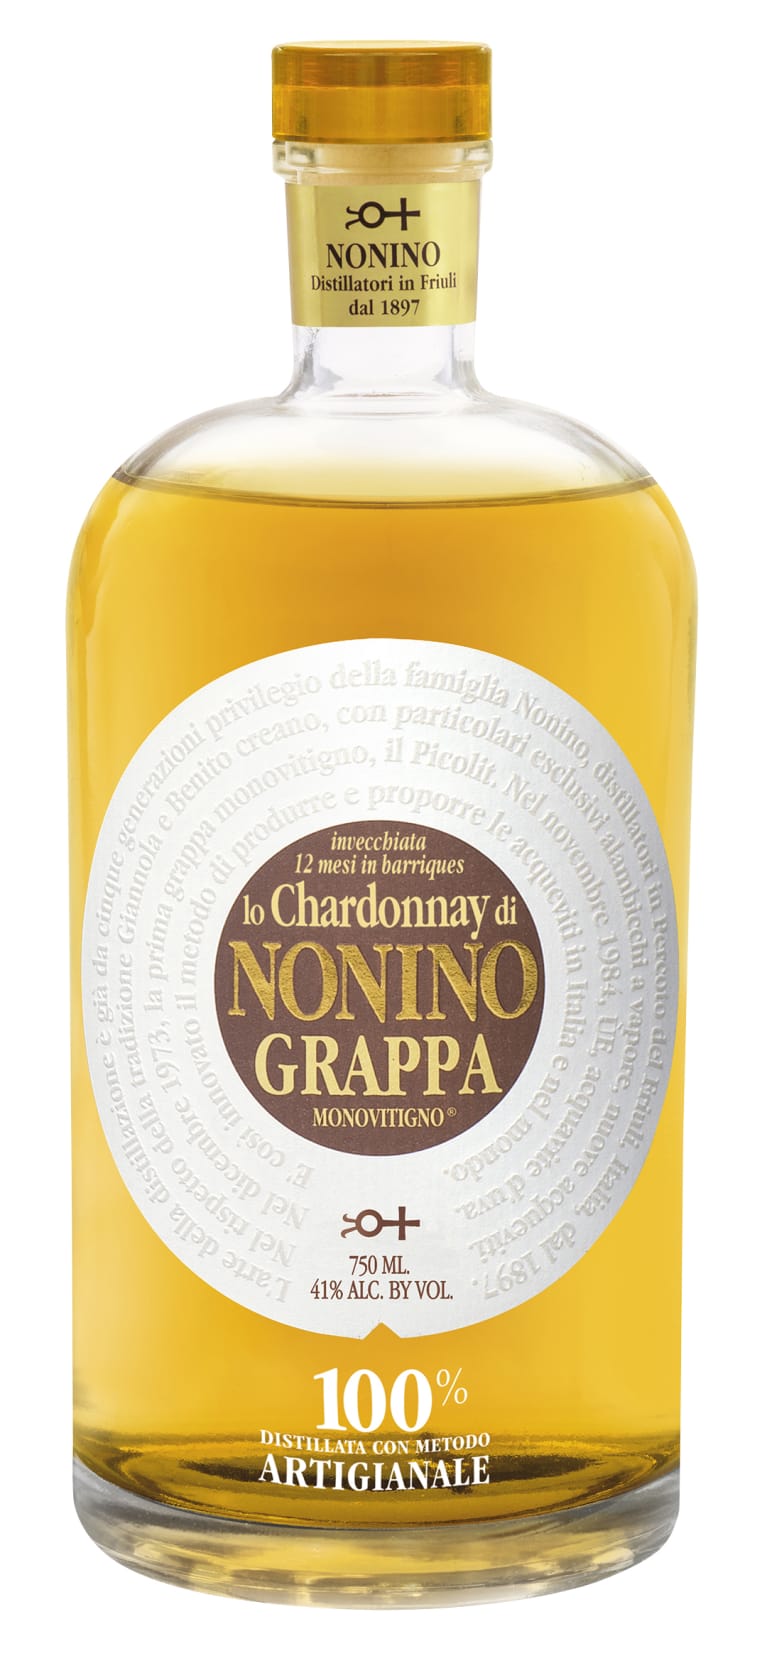 NONINO GRAPPA CHARDONNAY Brandy BeverageWarehouse